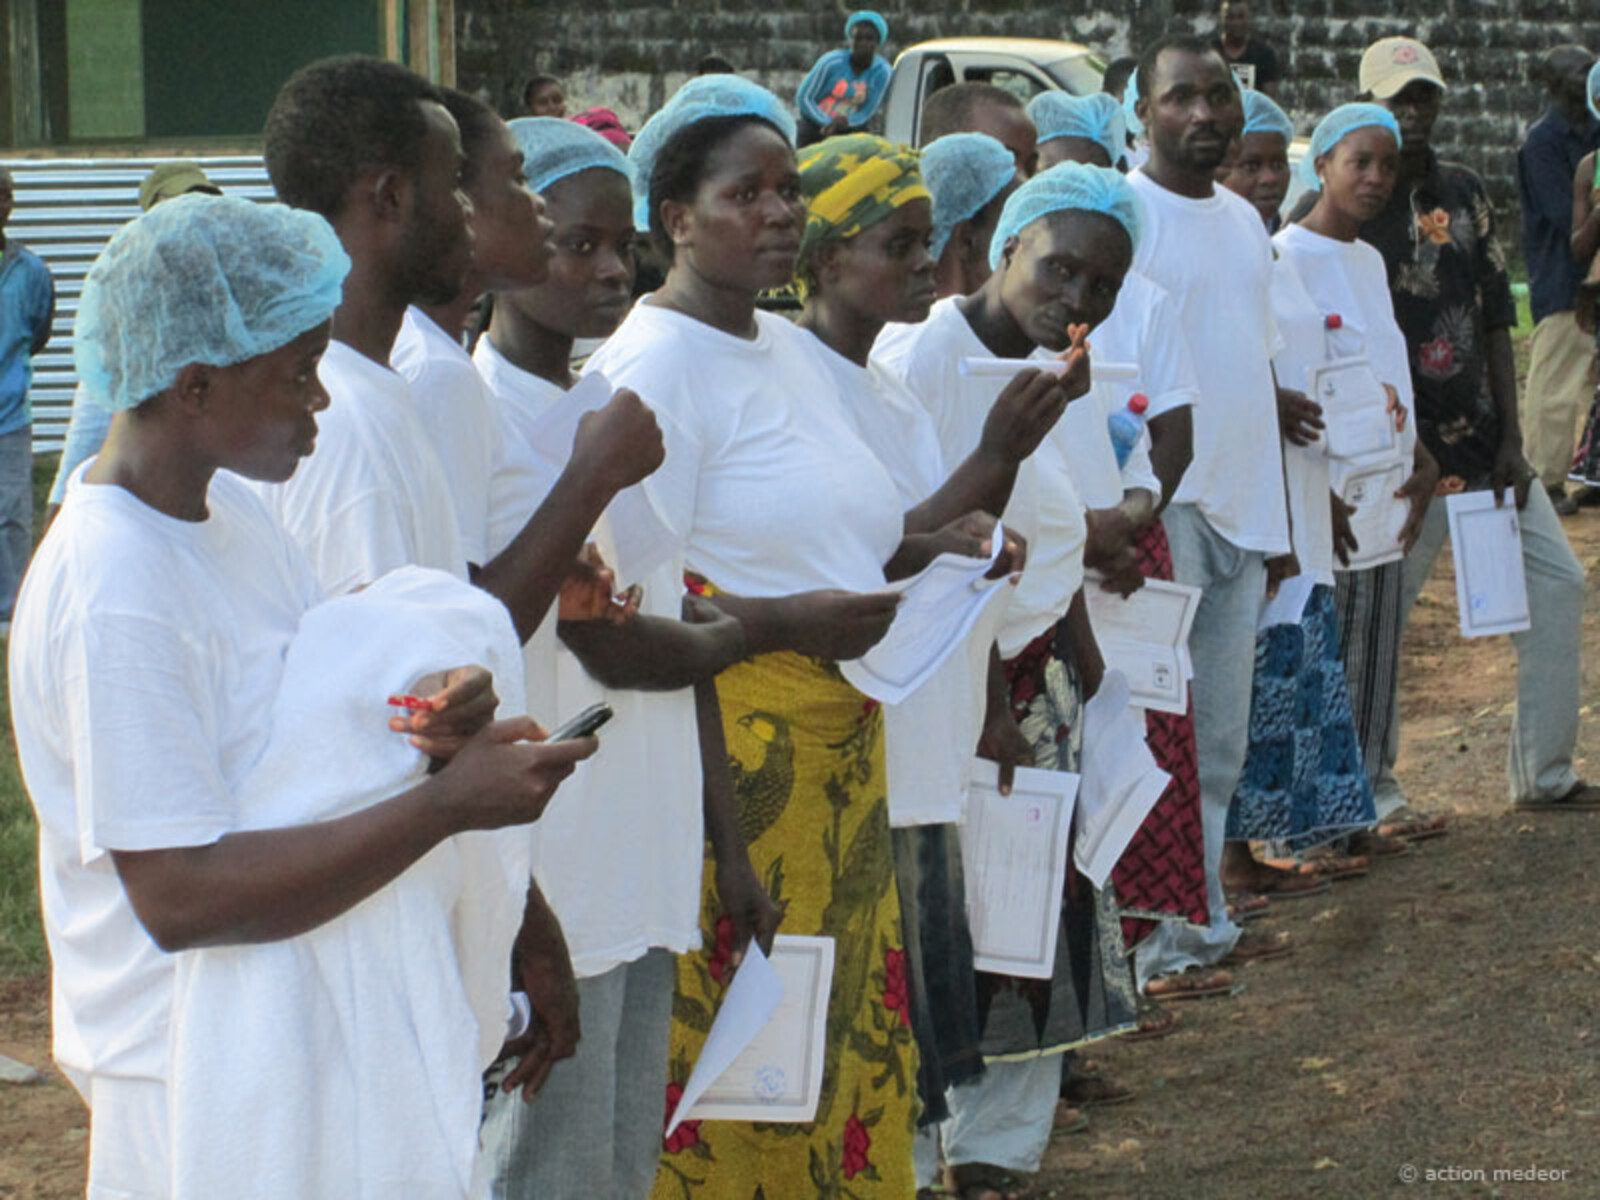 Um den Gesundheitssektor in den betroffenen Ländern zu stärken und die Behandlung der Betroffenen sicherzustellen, schulen unsere Bündnismitglieder das Gesundheitspersonal speziell für die besonderen Gefahren von Ebola.